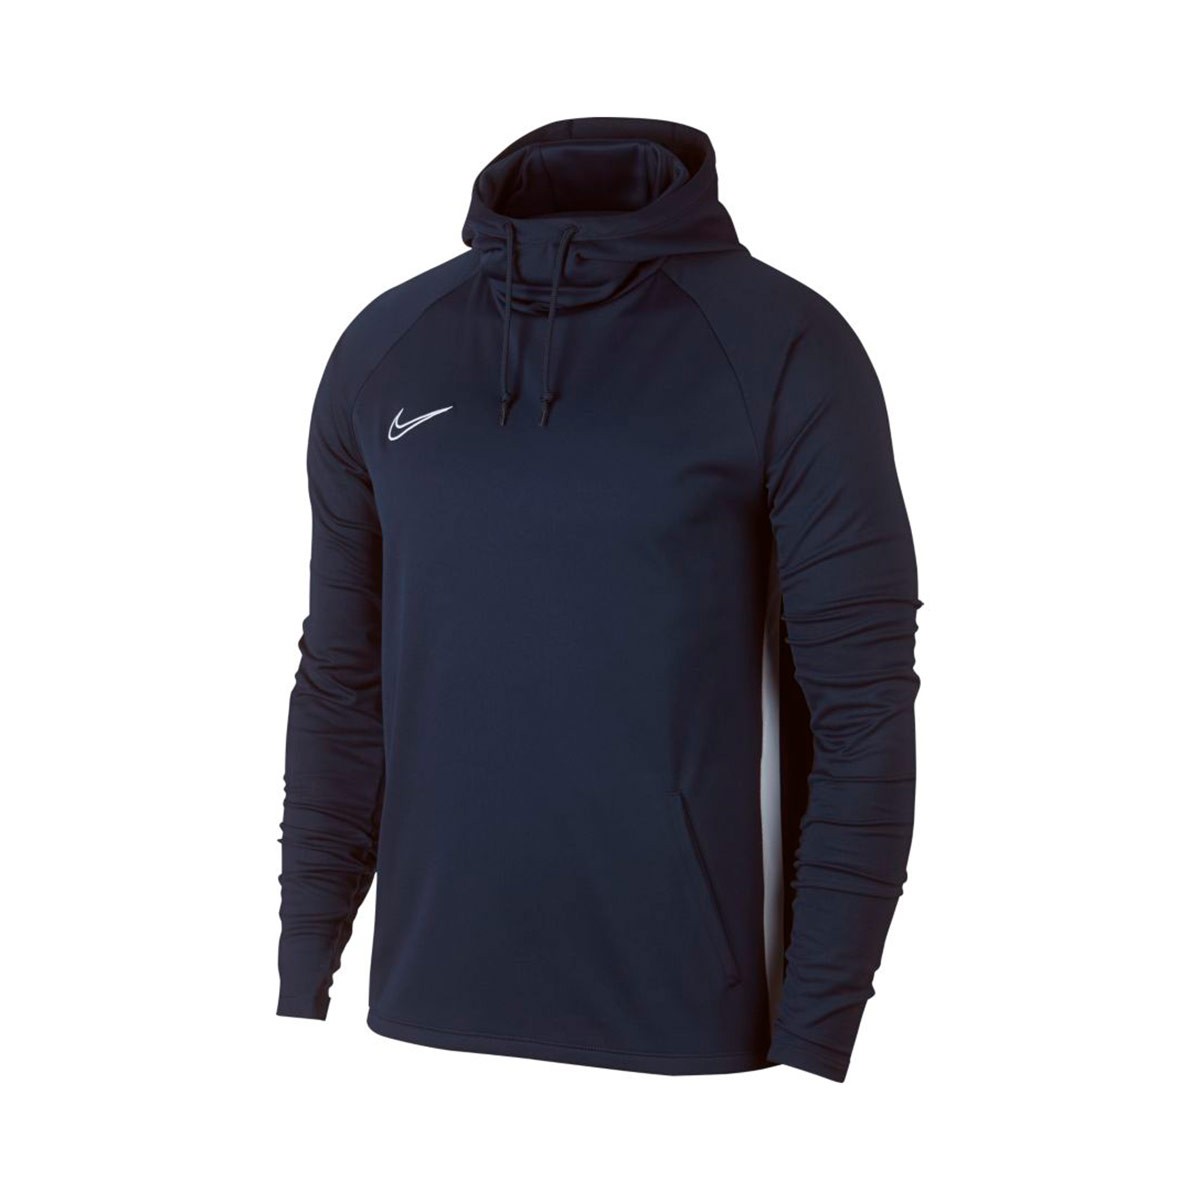 Sweatshirt Nike Dri-FIT Academy Obsidian-White - Fútbol Emotion